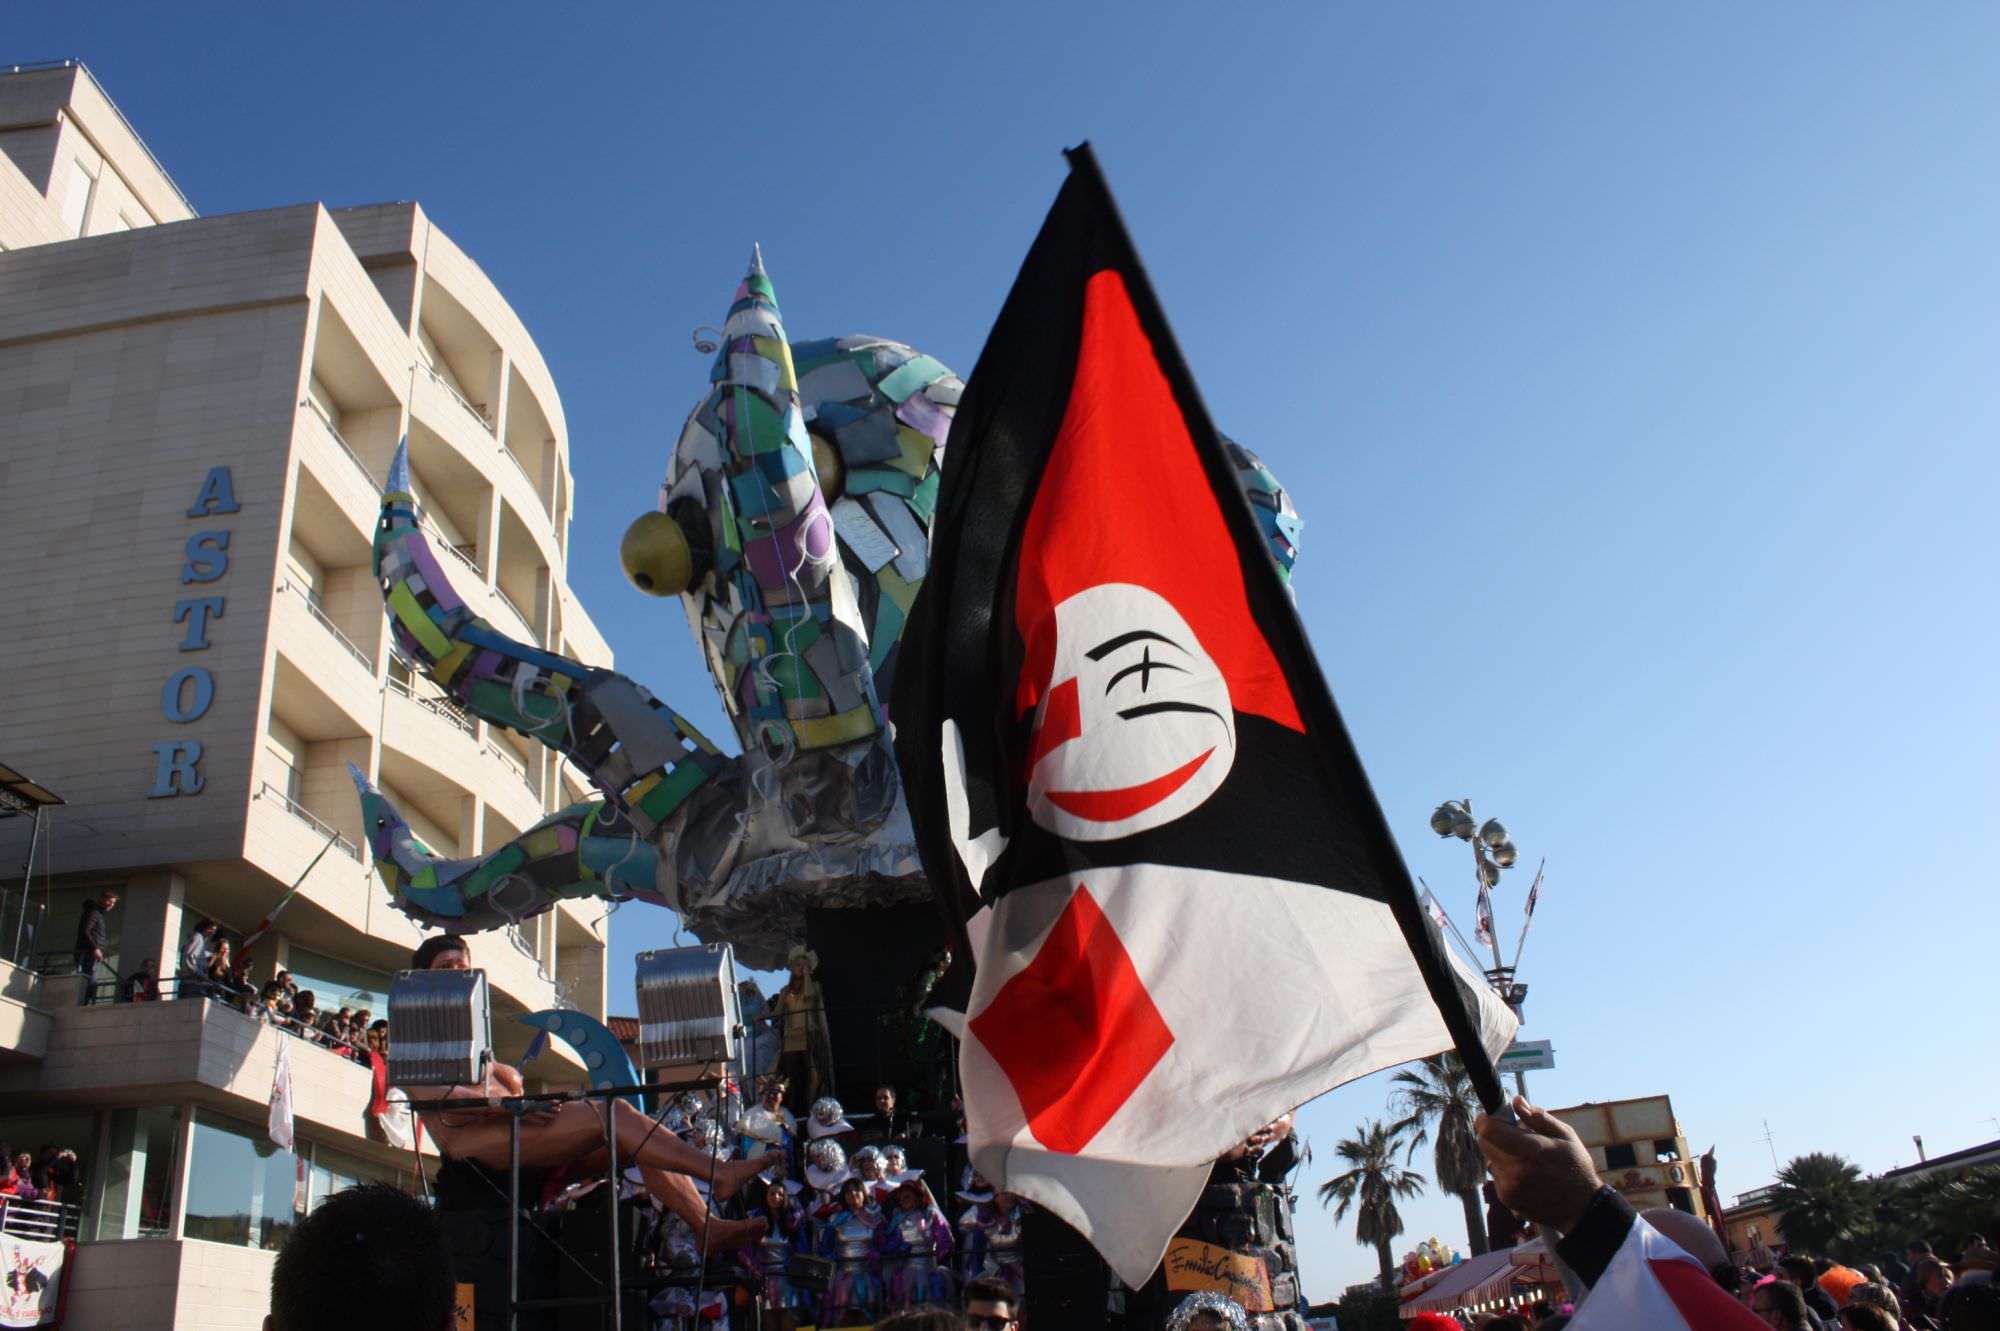 Carnevale di Viareggio 2015, incasso raddoppiato per il secondo corso: 217mila euro